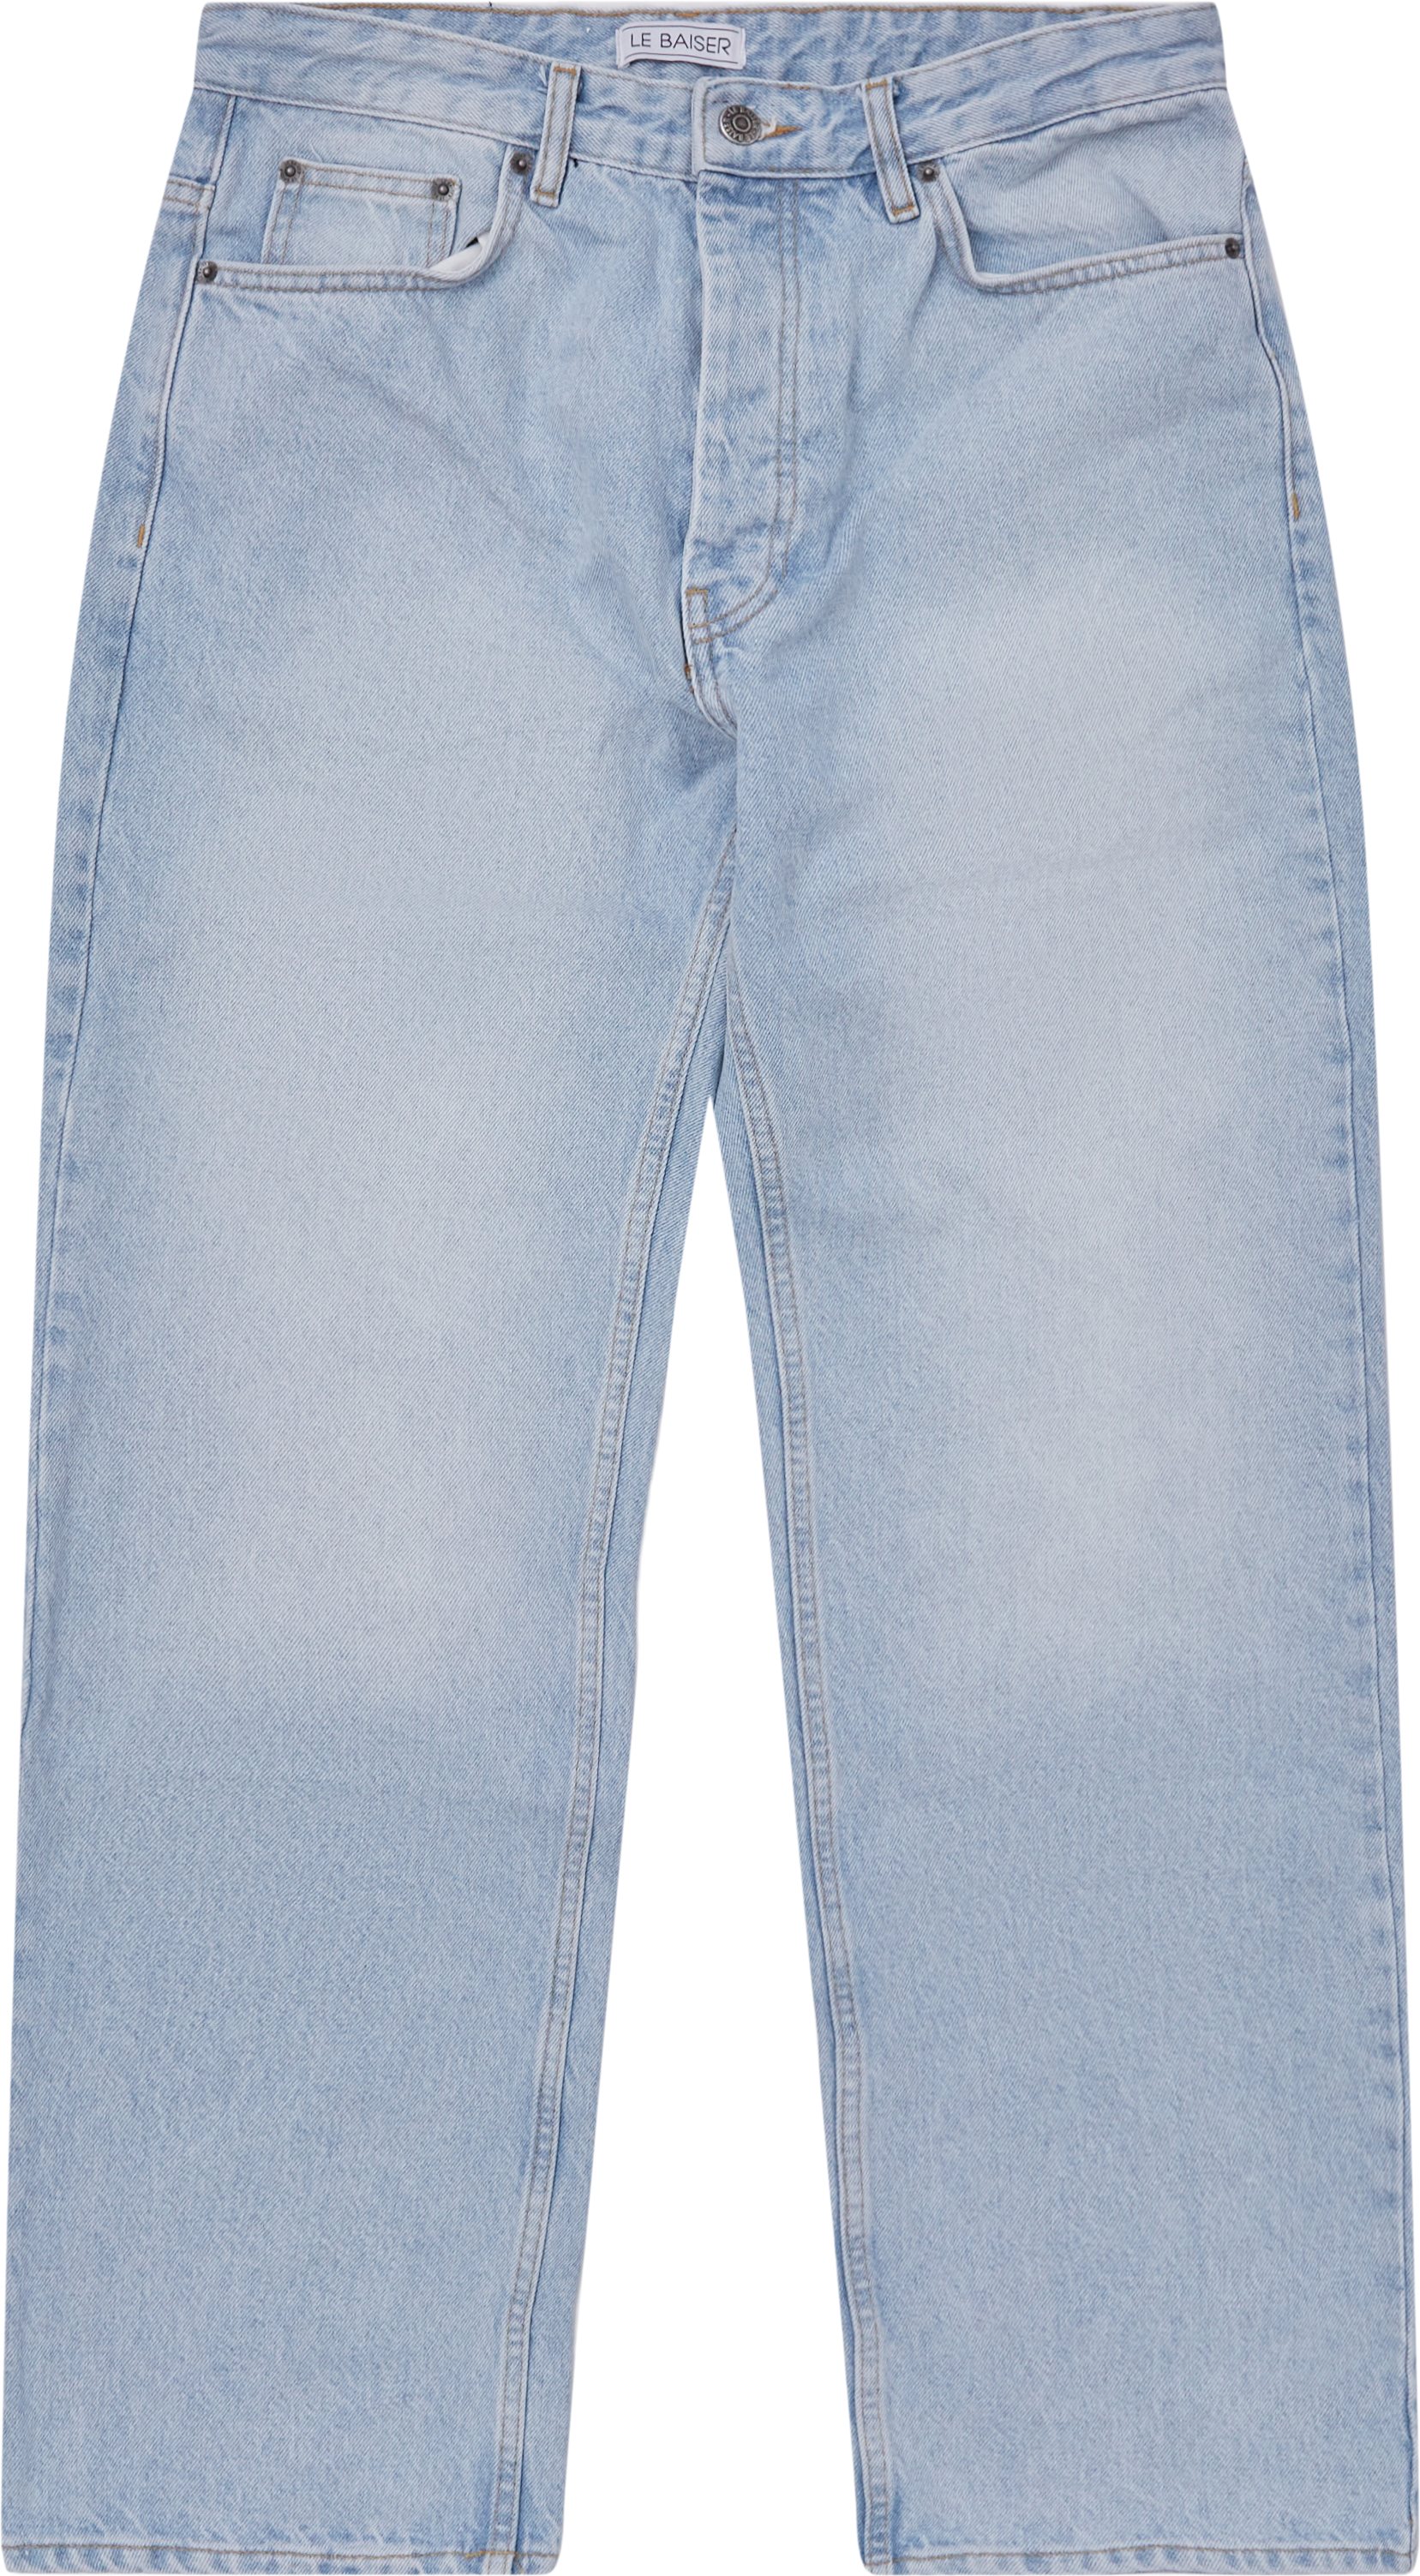 Le Baiser Jeans COLMAR CLEAR BLUE Denim